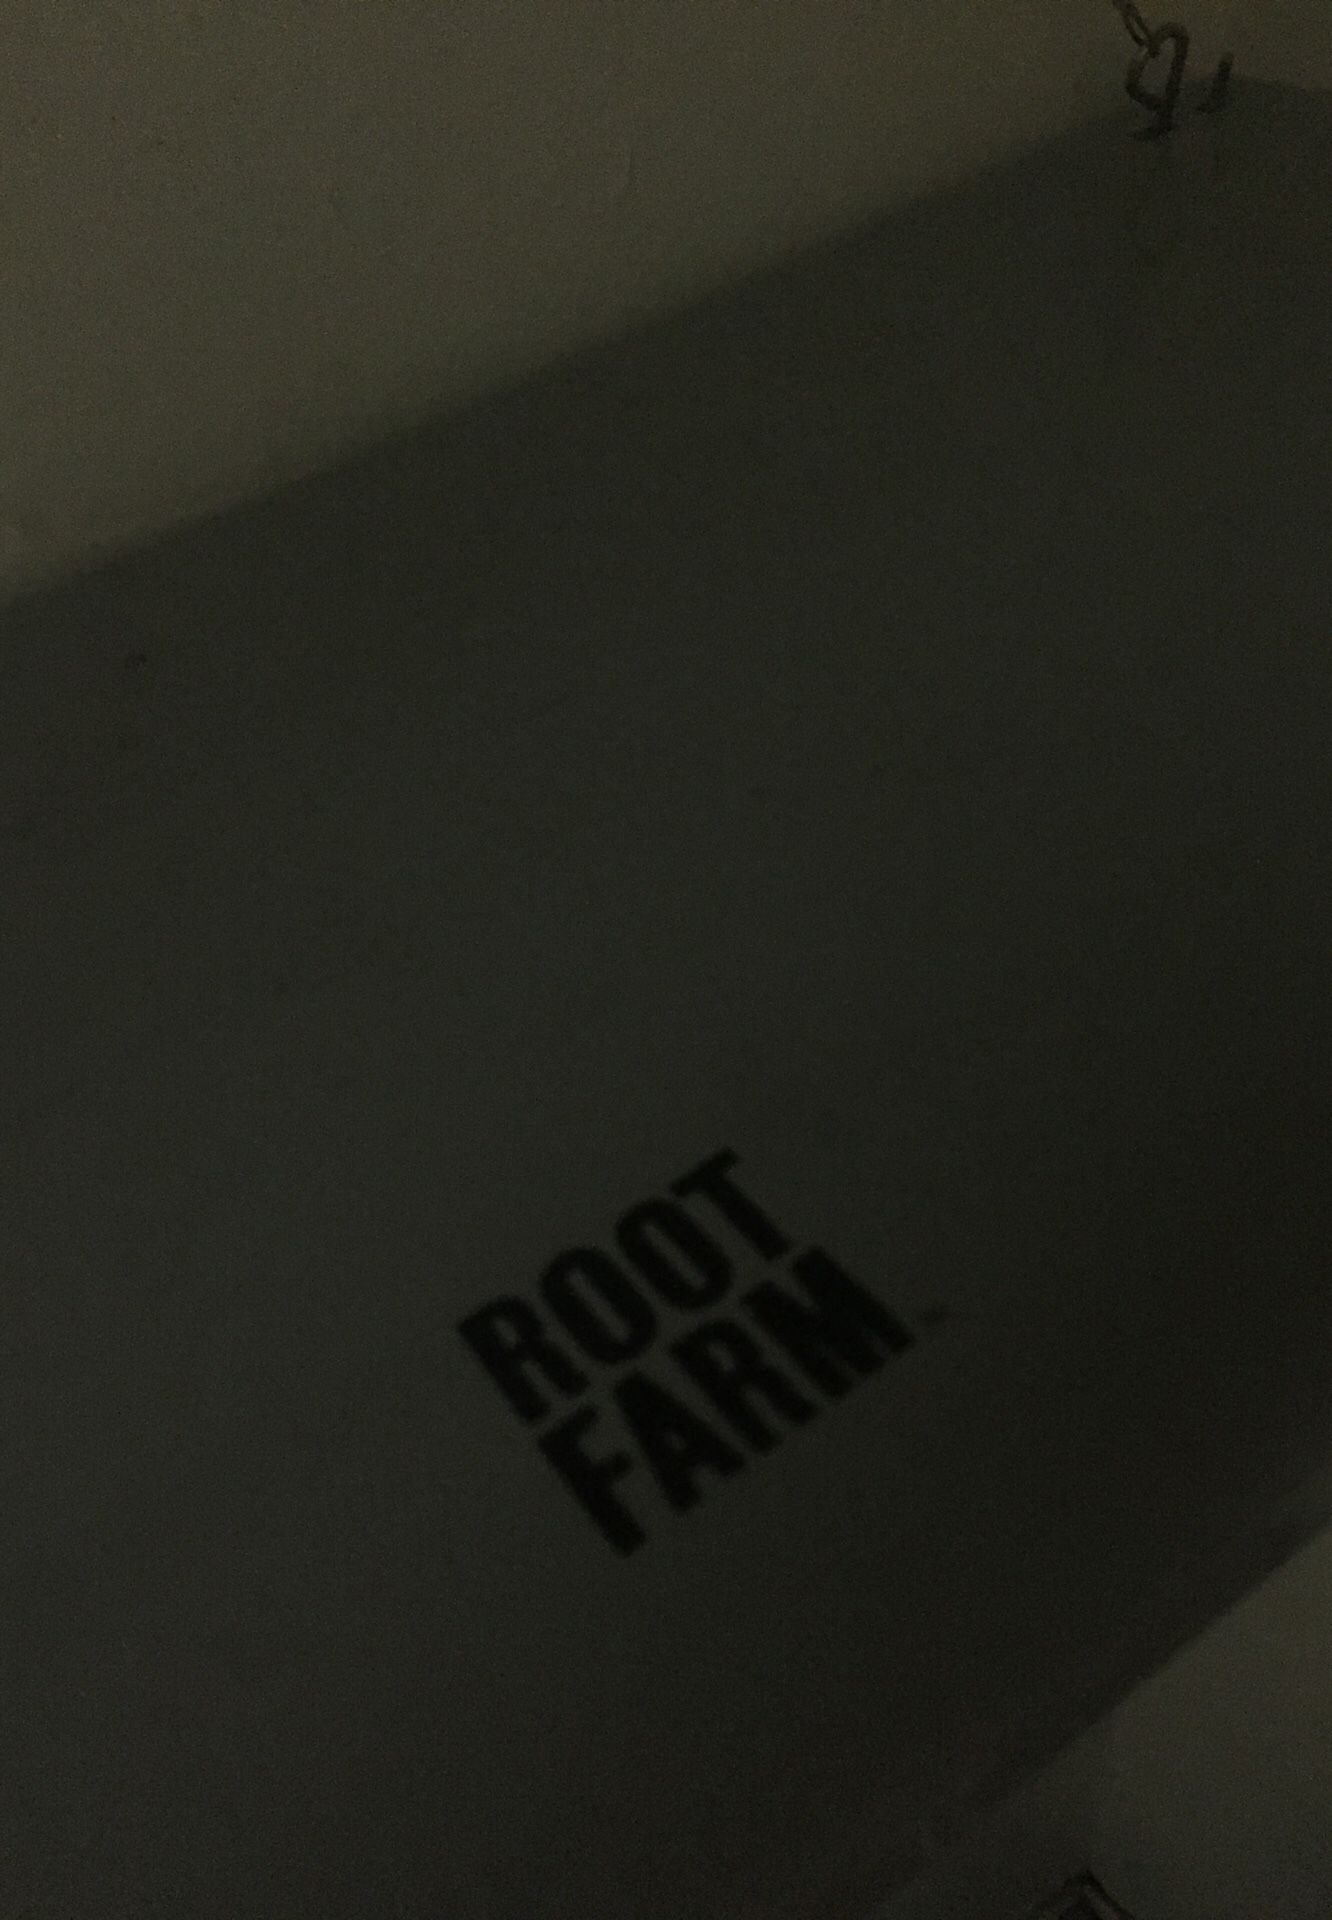 Root farm